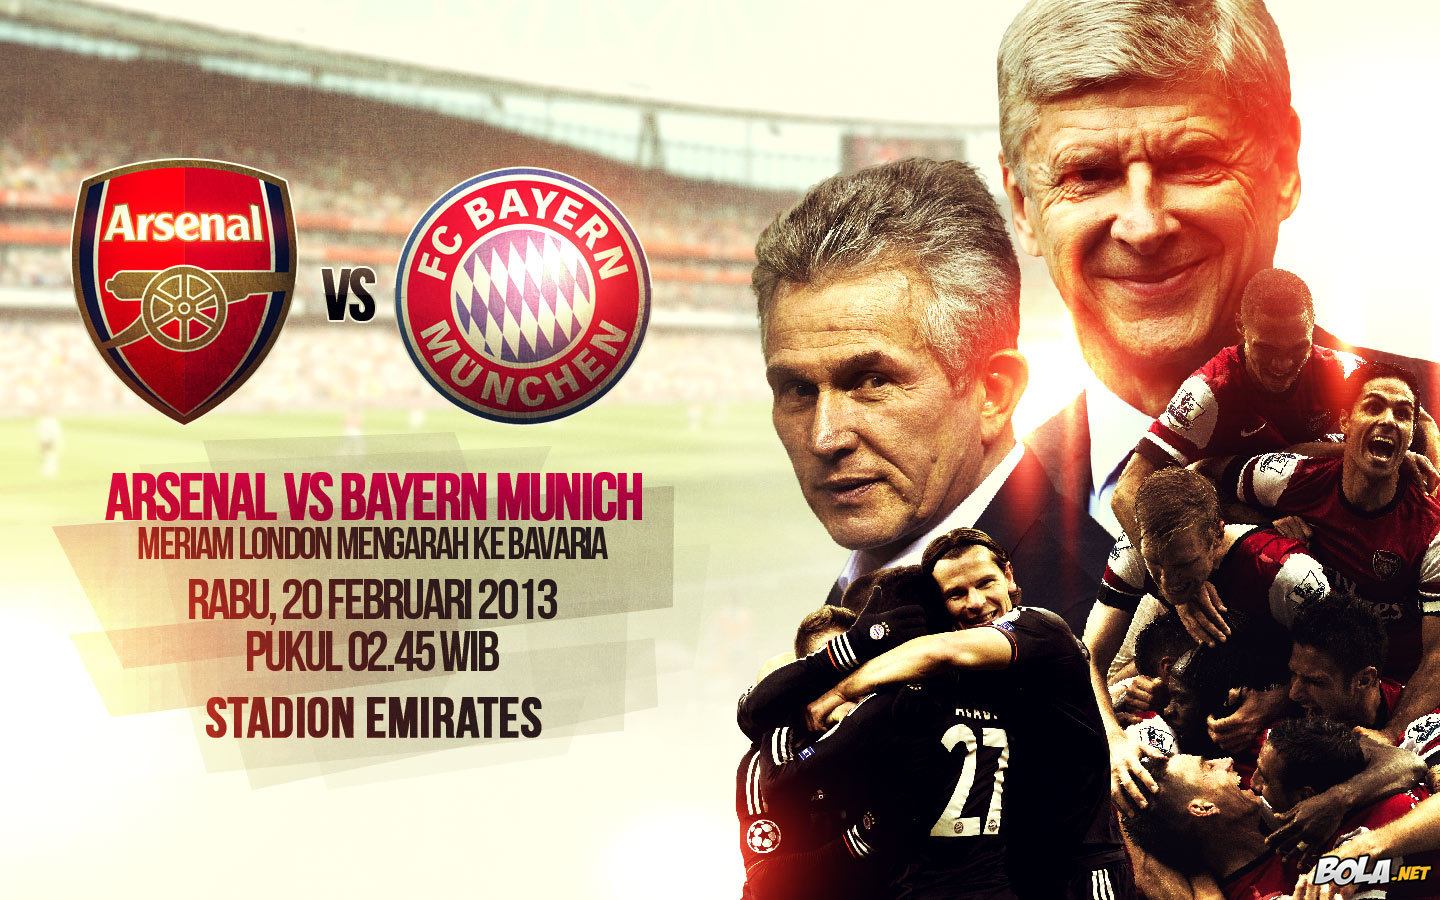 Deskripsi : Wallpaper Arsenal Vs Bayern Munich, size: 1440x900